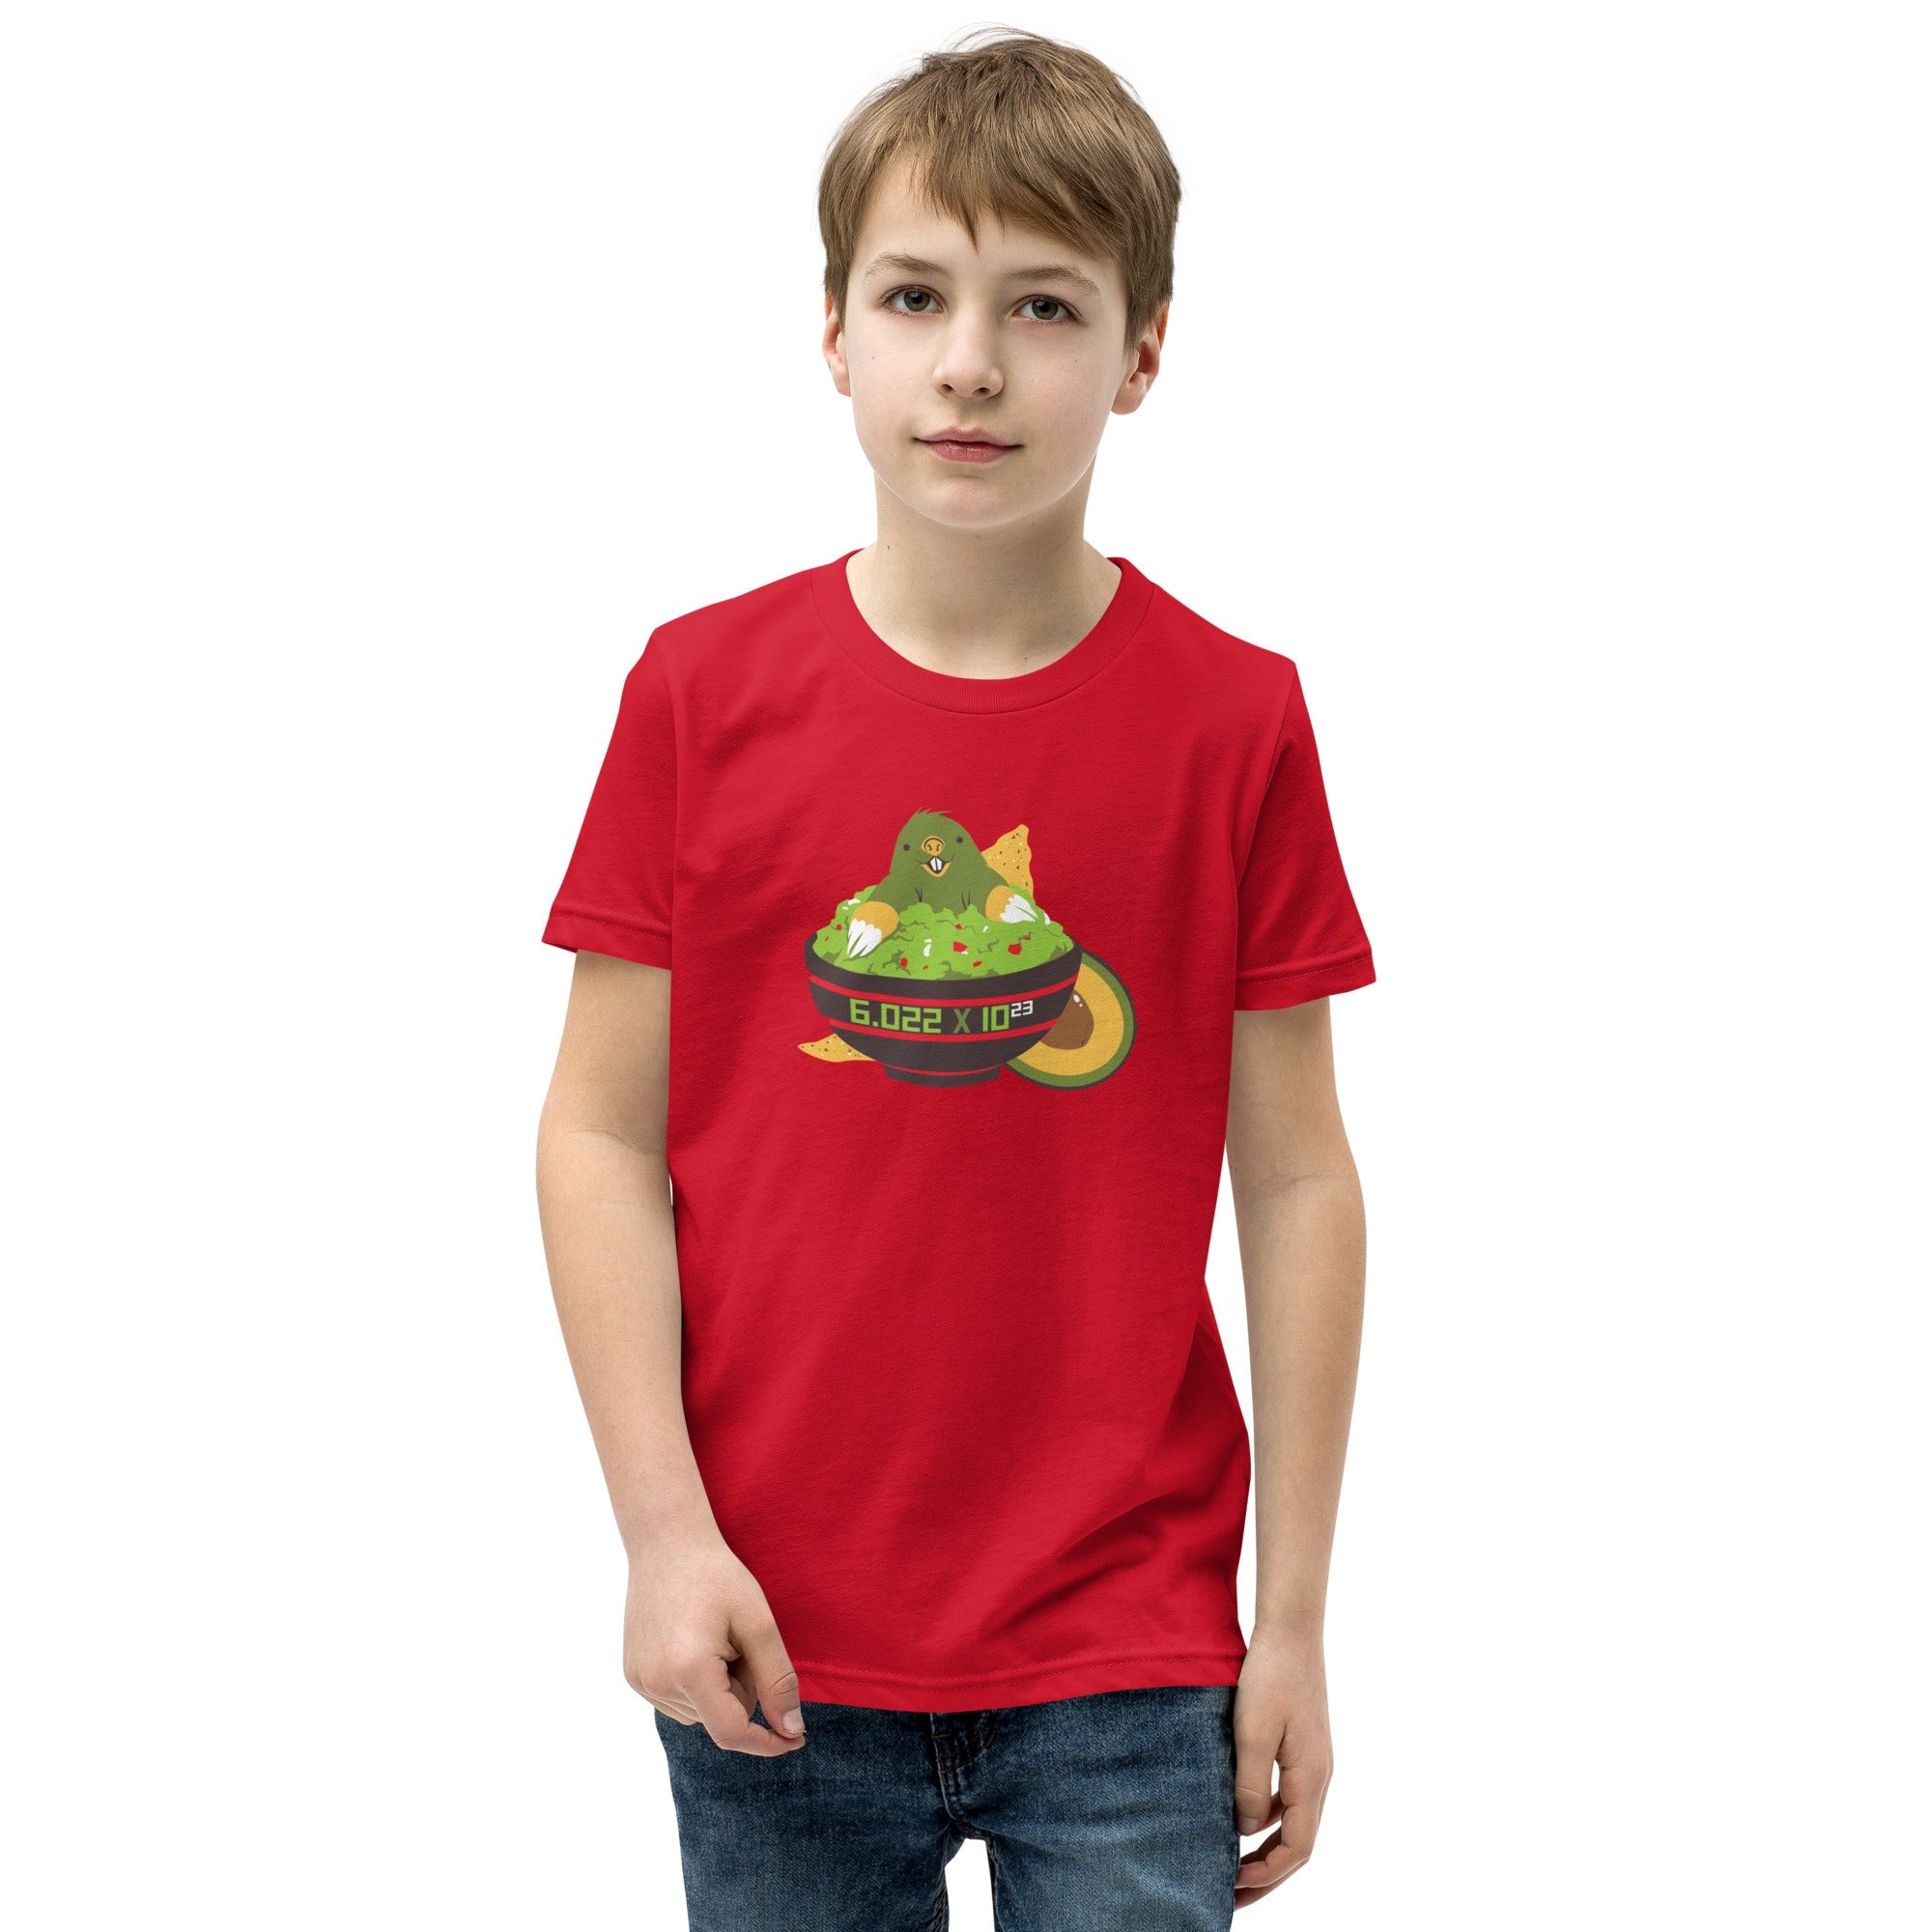 Avogadro's Number Custom Kids T-Shirt